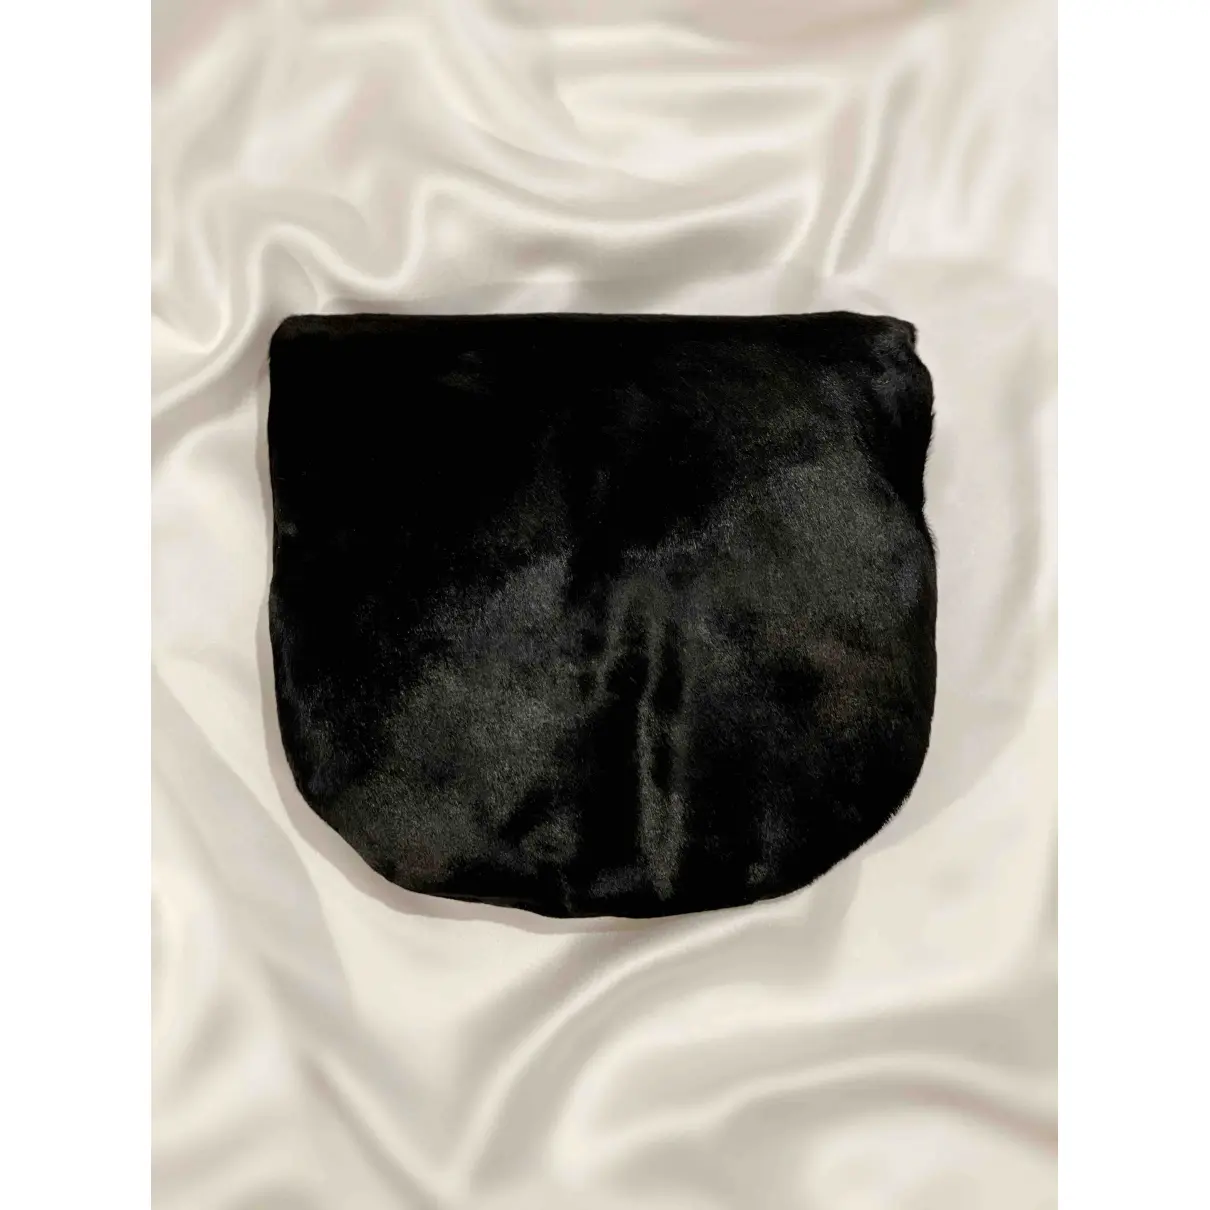 Buy Simone Rocha Pony-style calfskin clutch bag online